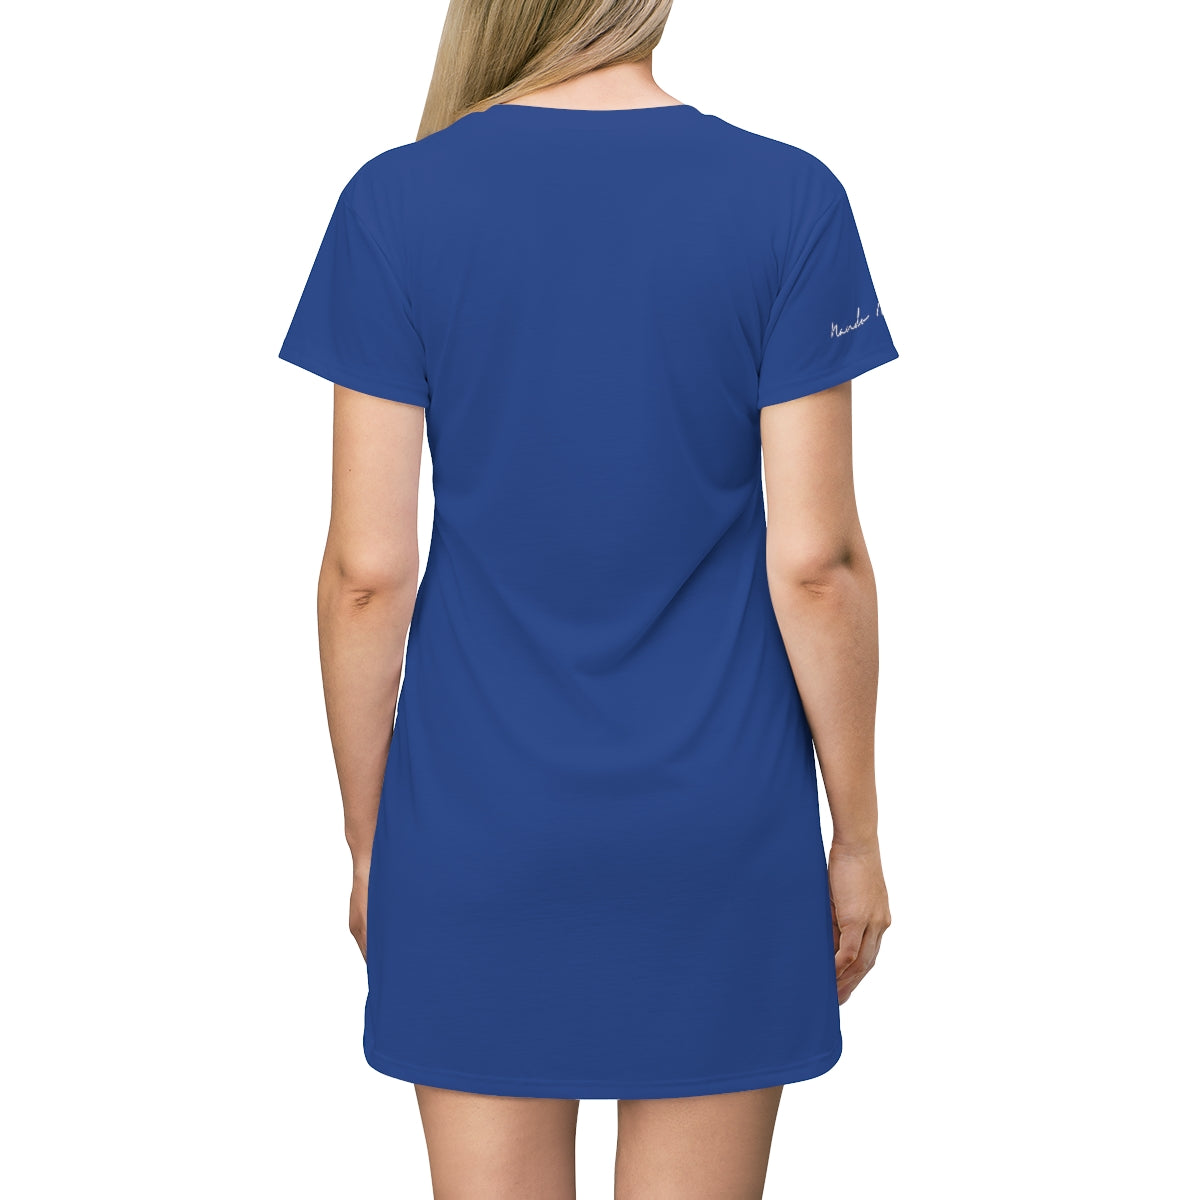 Shirtdress, Blue Gaga 911